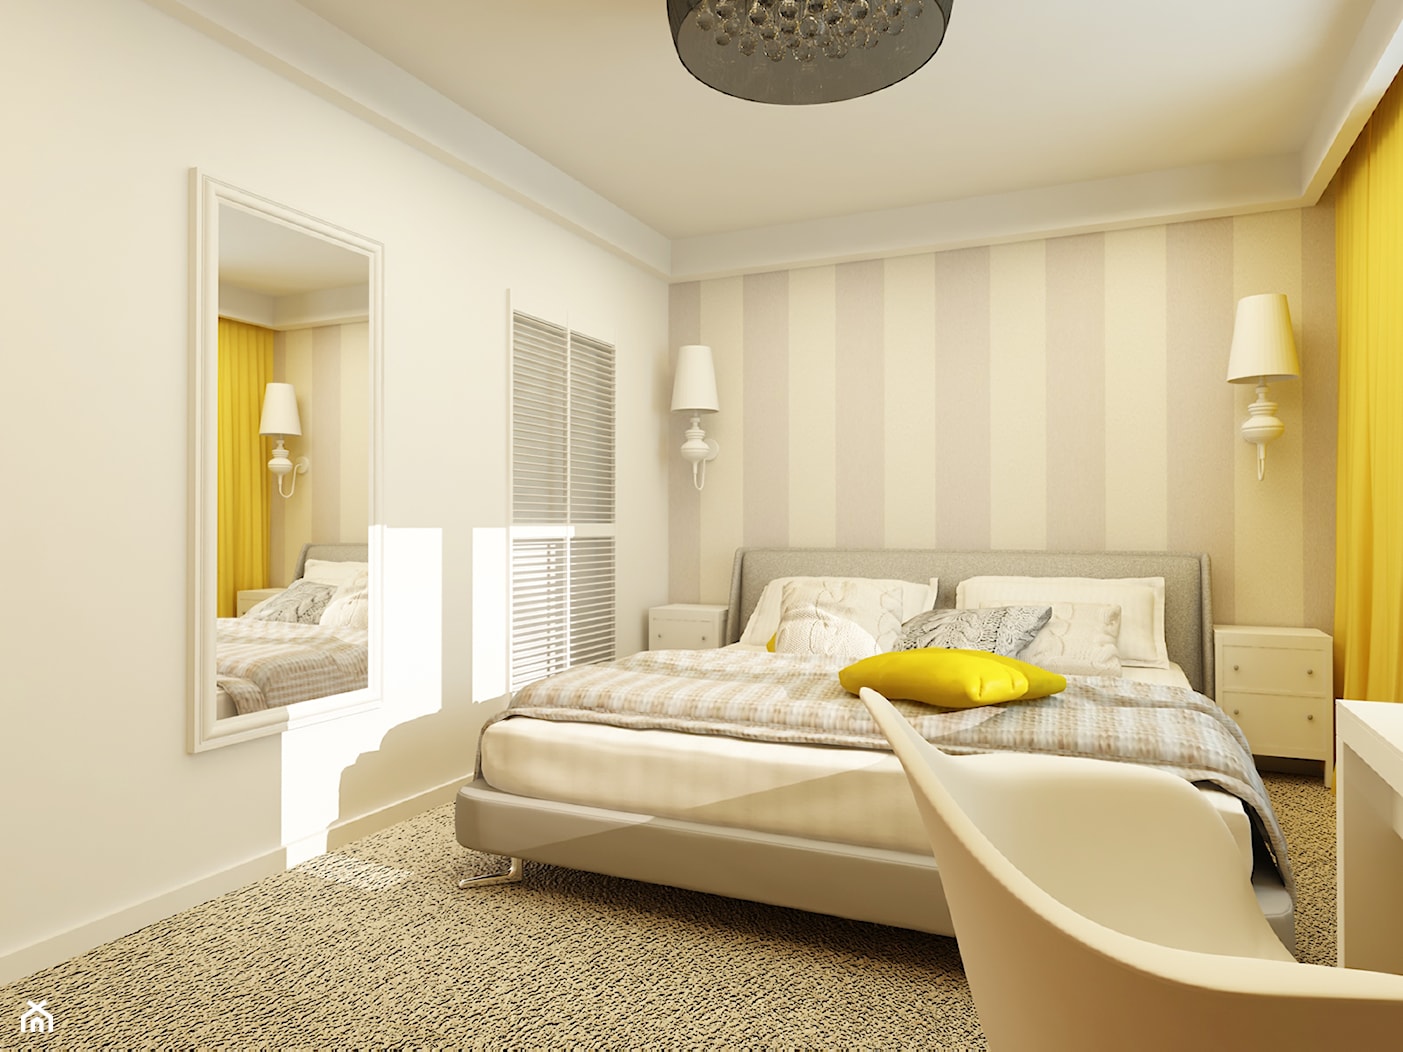 PROWANSALSKO -ANGIELSKI MIX - Średnia beżowa biała szara sypialnia, styl prowansalski - zdjęcie od design me too - Homebook